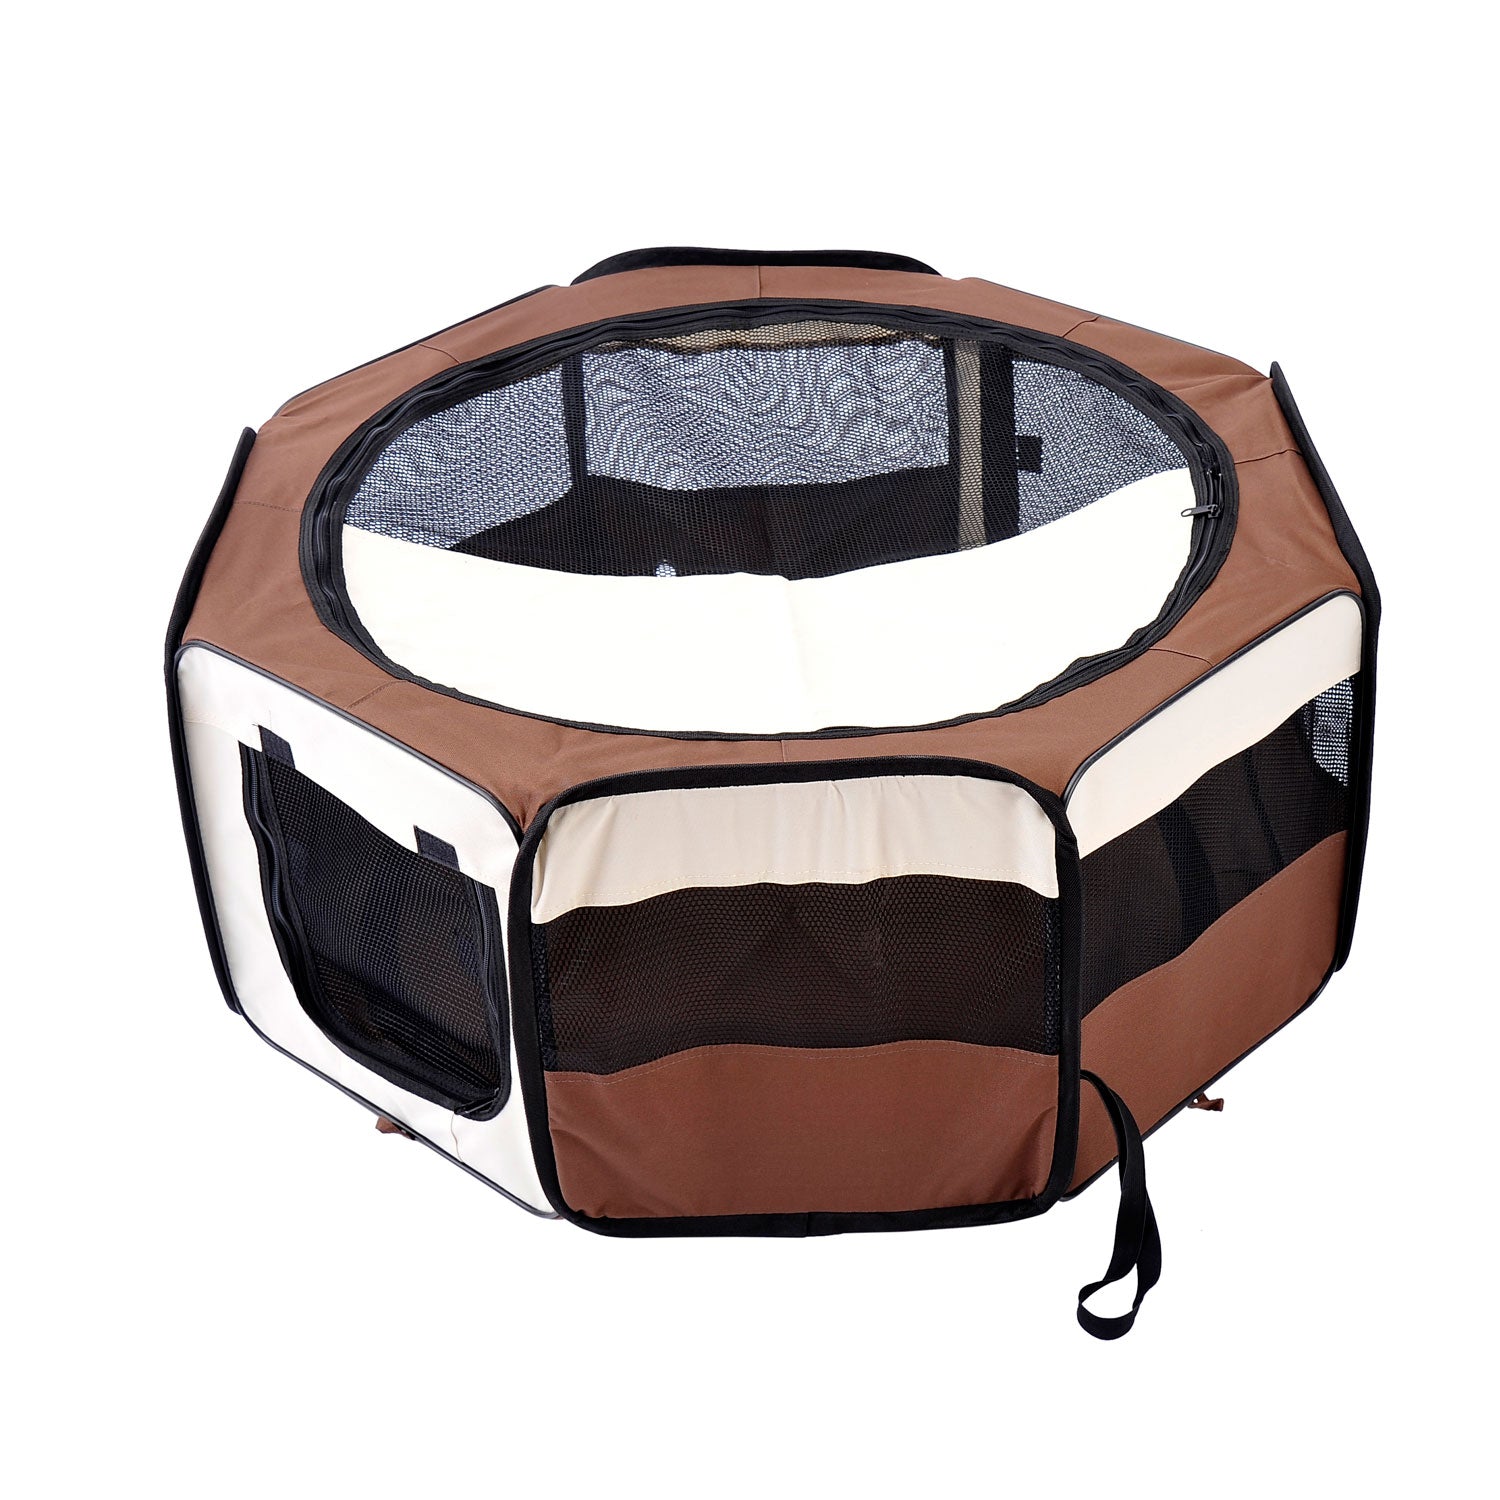 HOMCOM Fabric Pet Dog Playpen (37cm x37cm x95cm)-Brown/Cream